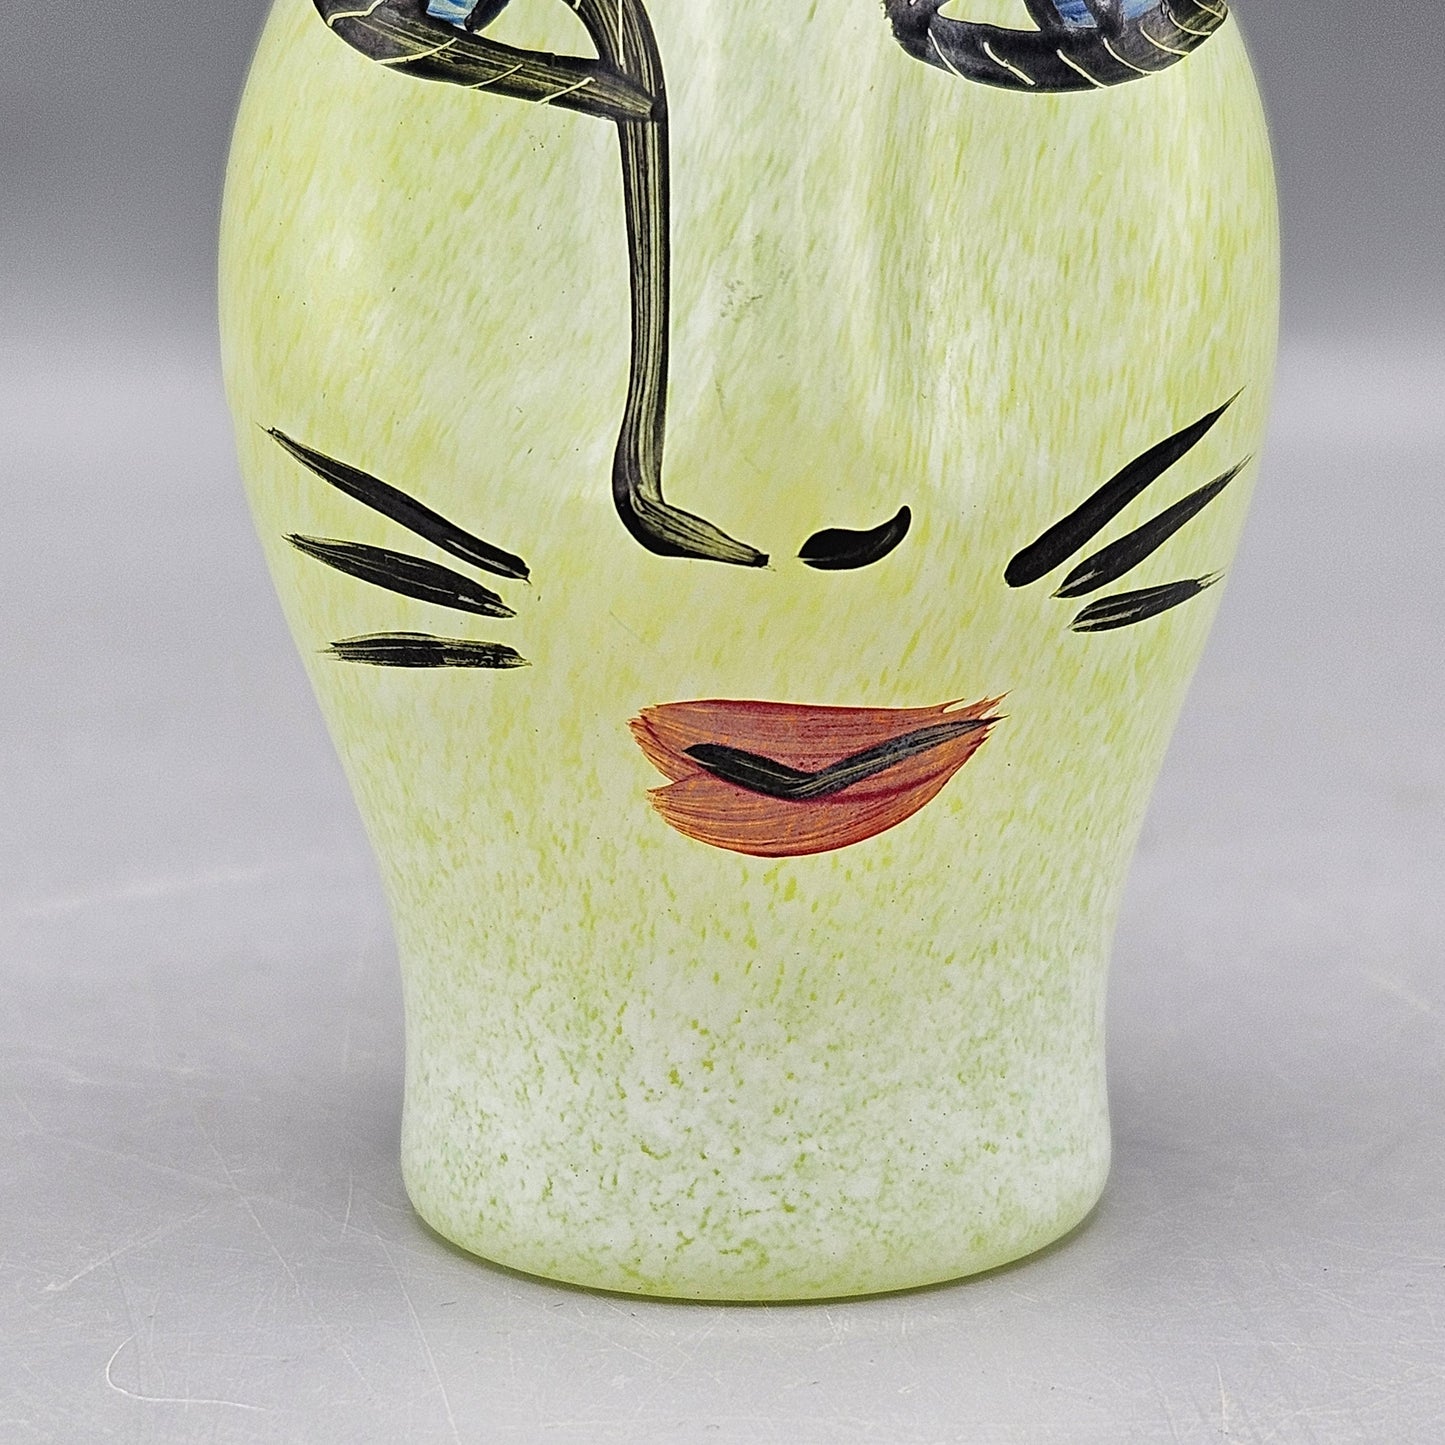 Kosta Boda Ulrica Hydman-Vallien 'Open Minds' Miniature Vase